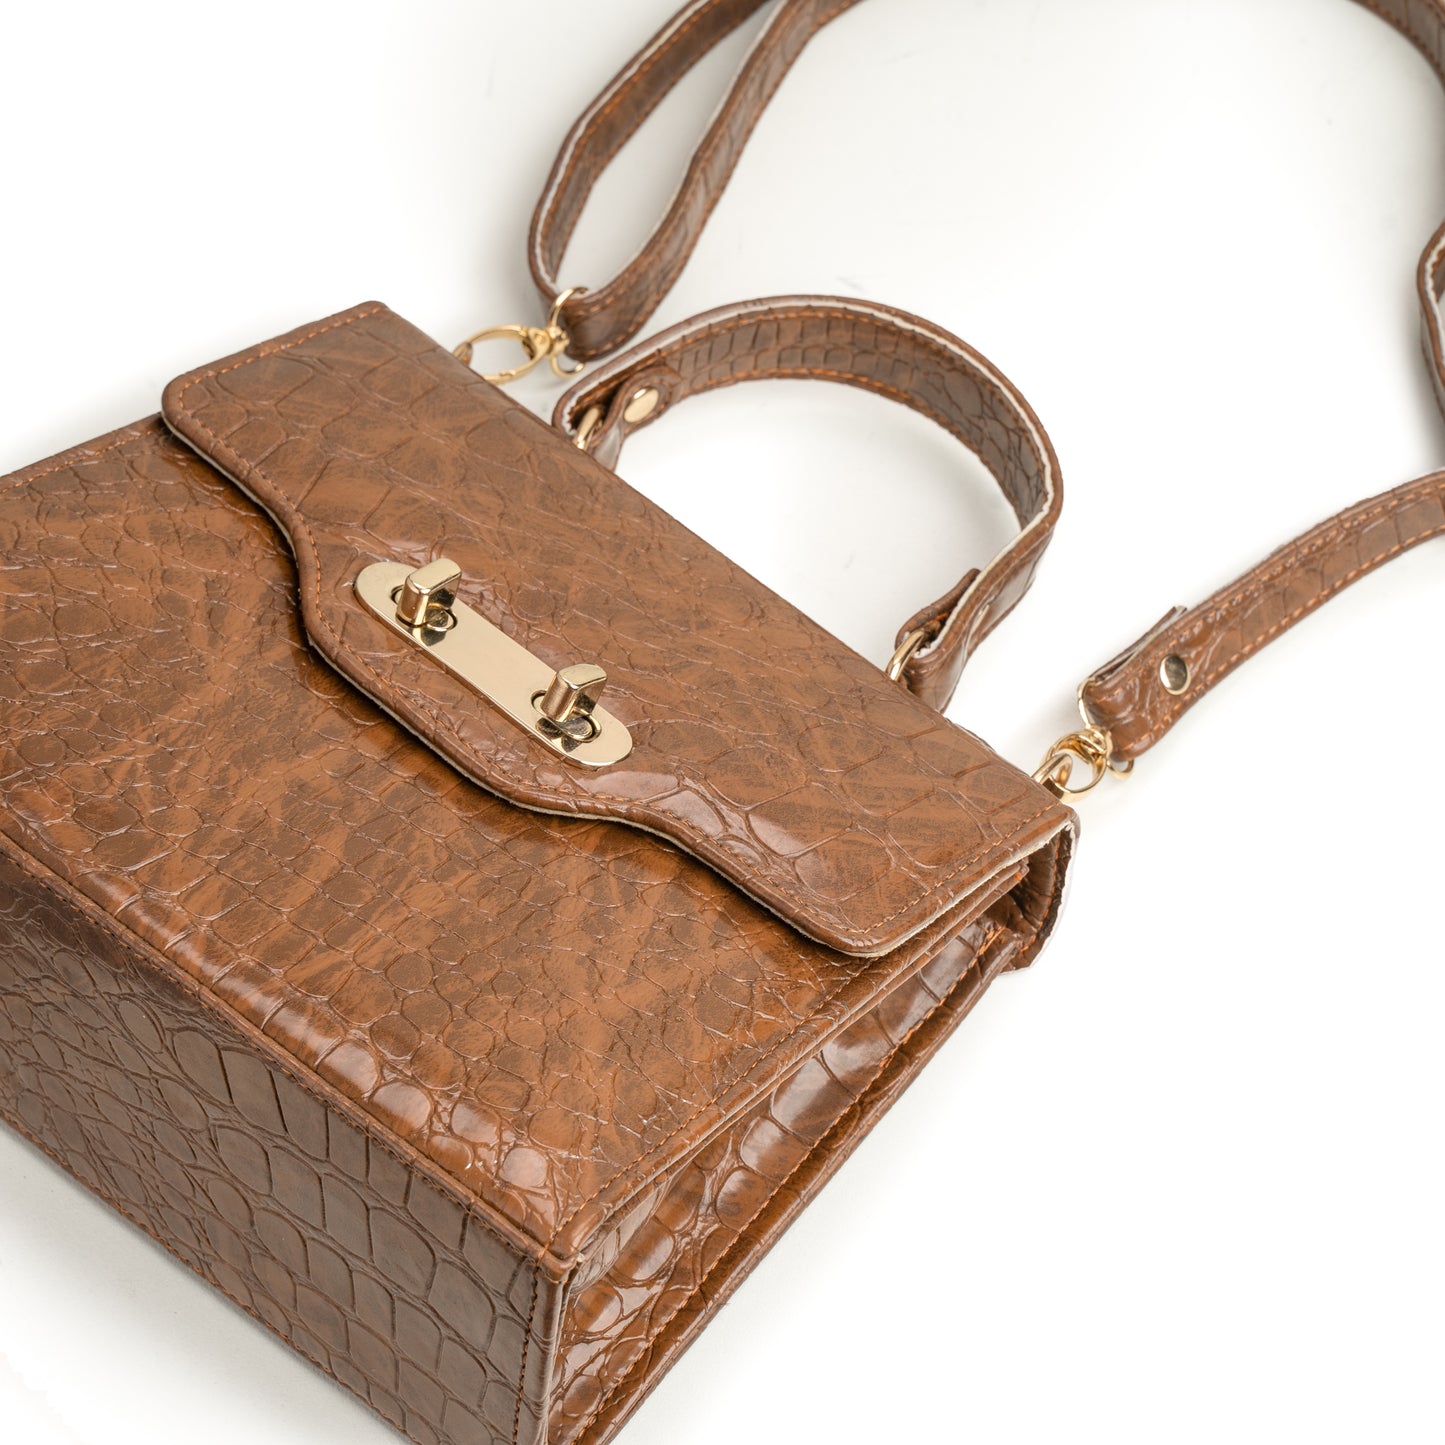 Kyla Crocodile Series | Luxury handbag